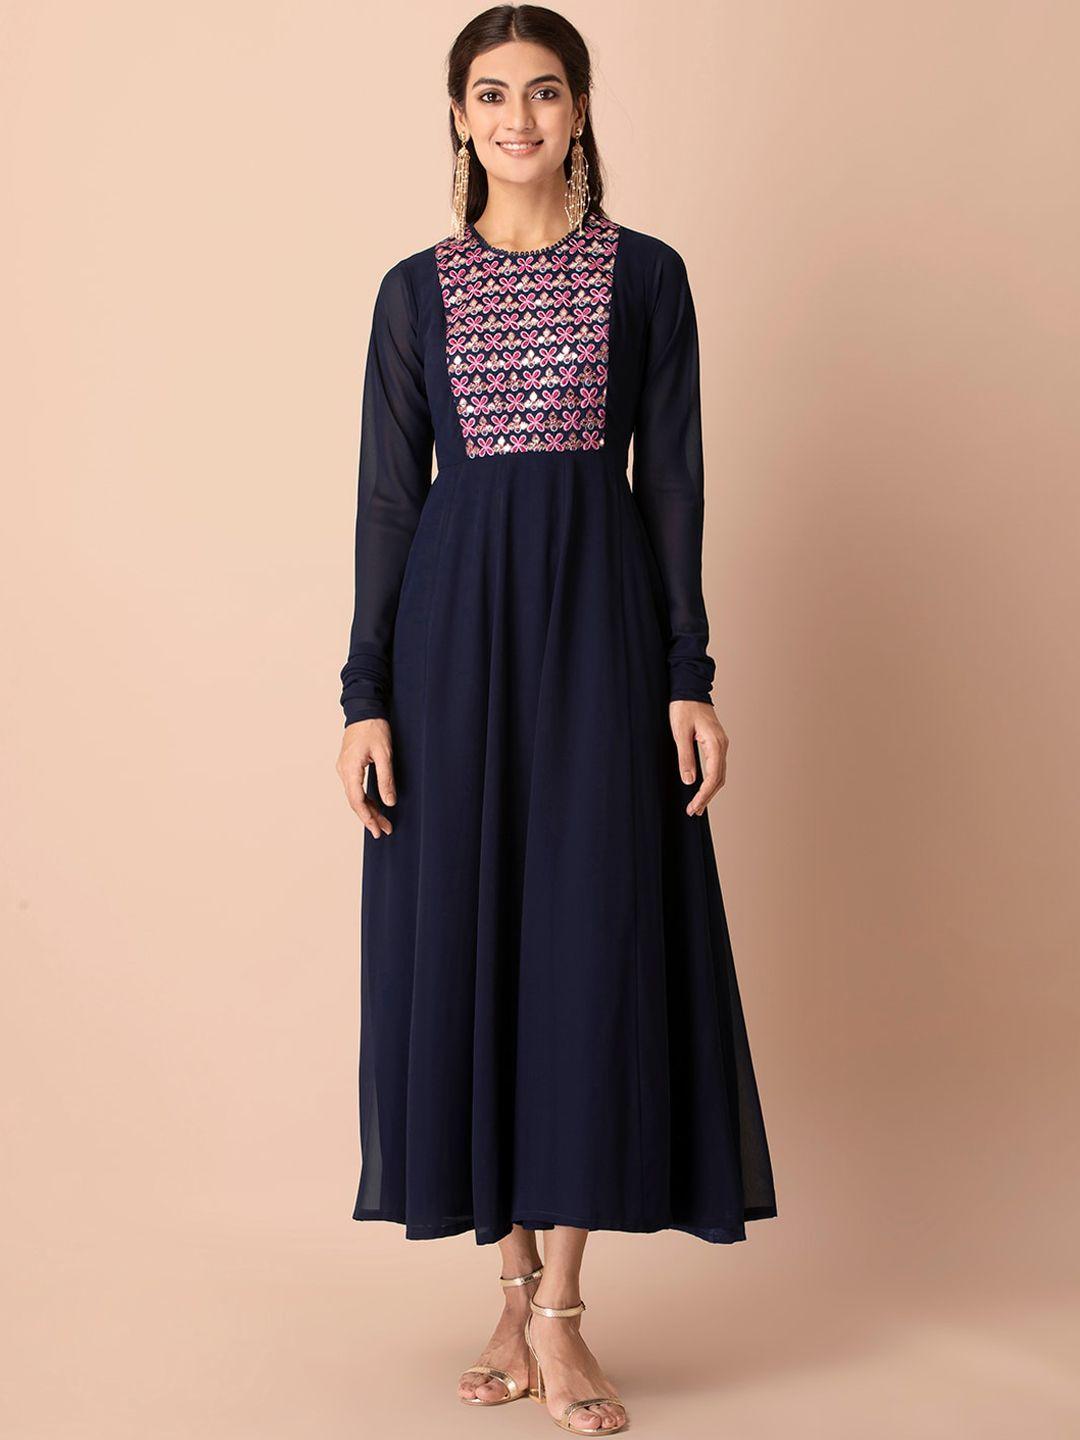 indya-navy-blue-&-pink-floral-embroidered-churidar-sleeve-anarkali-dress